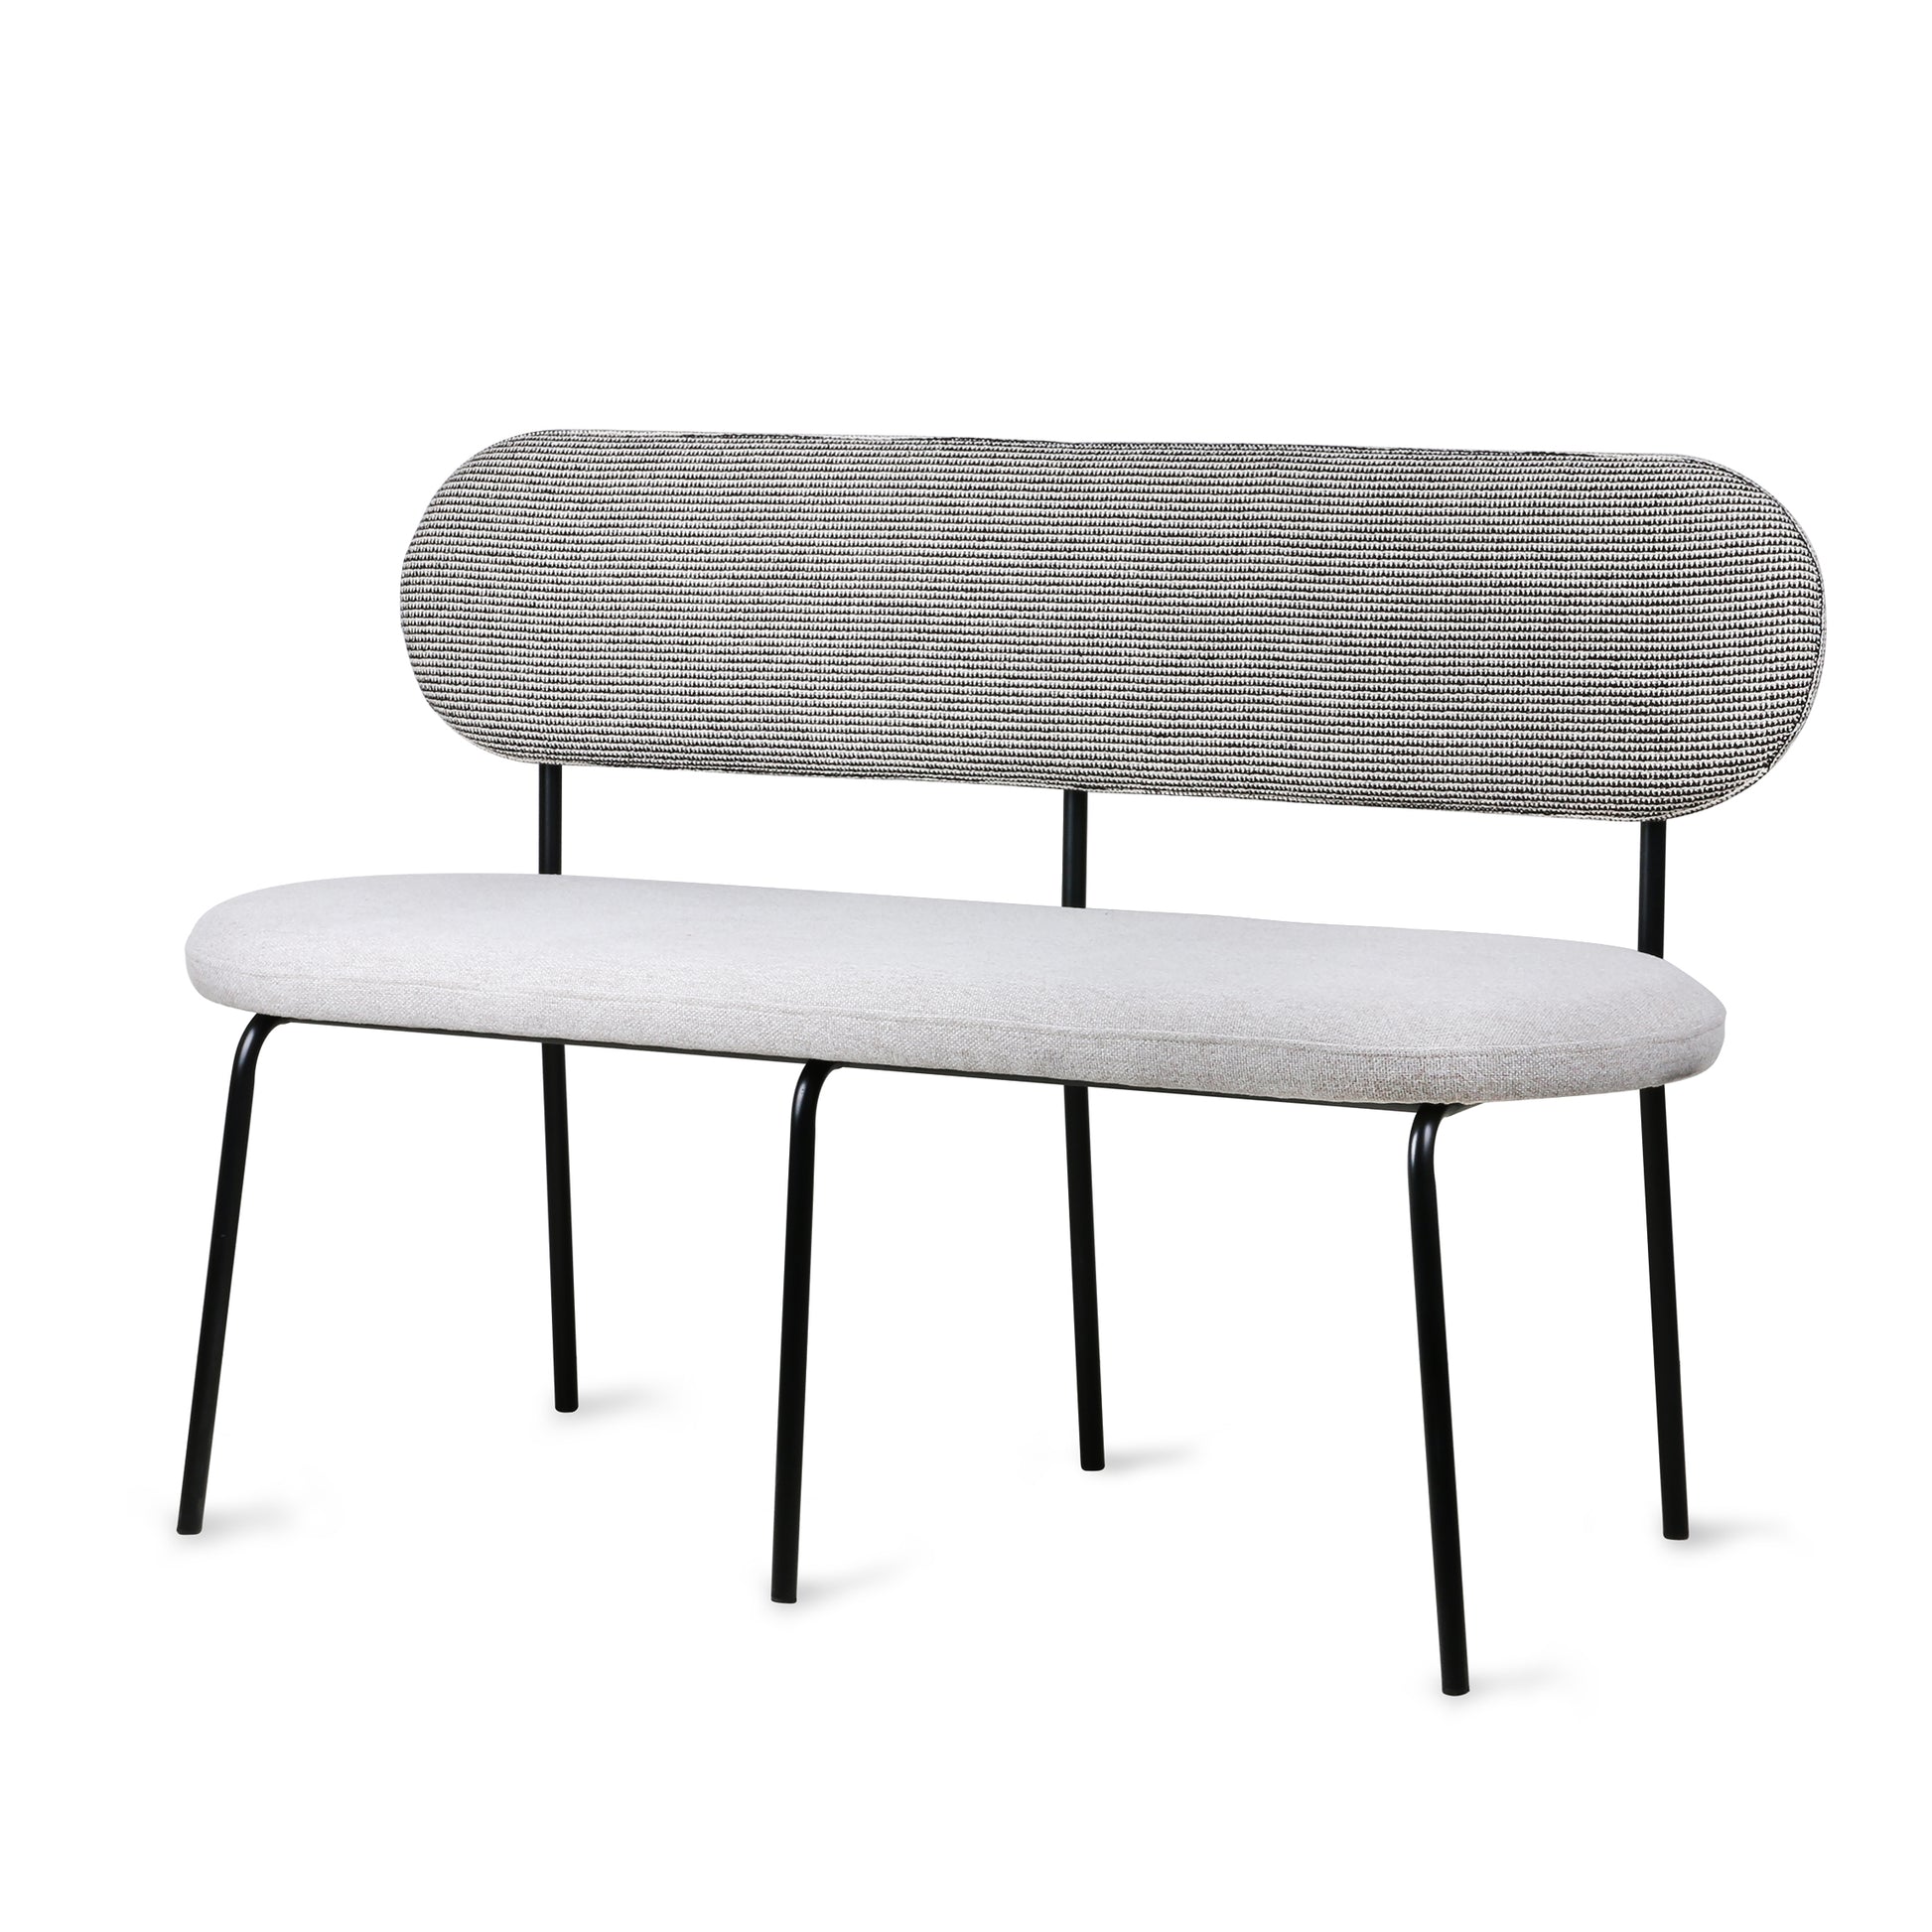 Elegant Gallery Bench – dining gray HKliving Amstel USA MZM4796 backrest upholstered